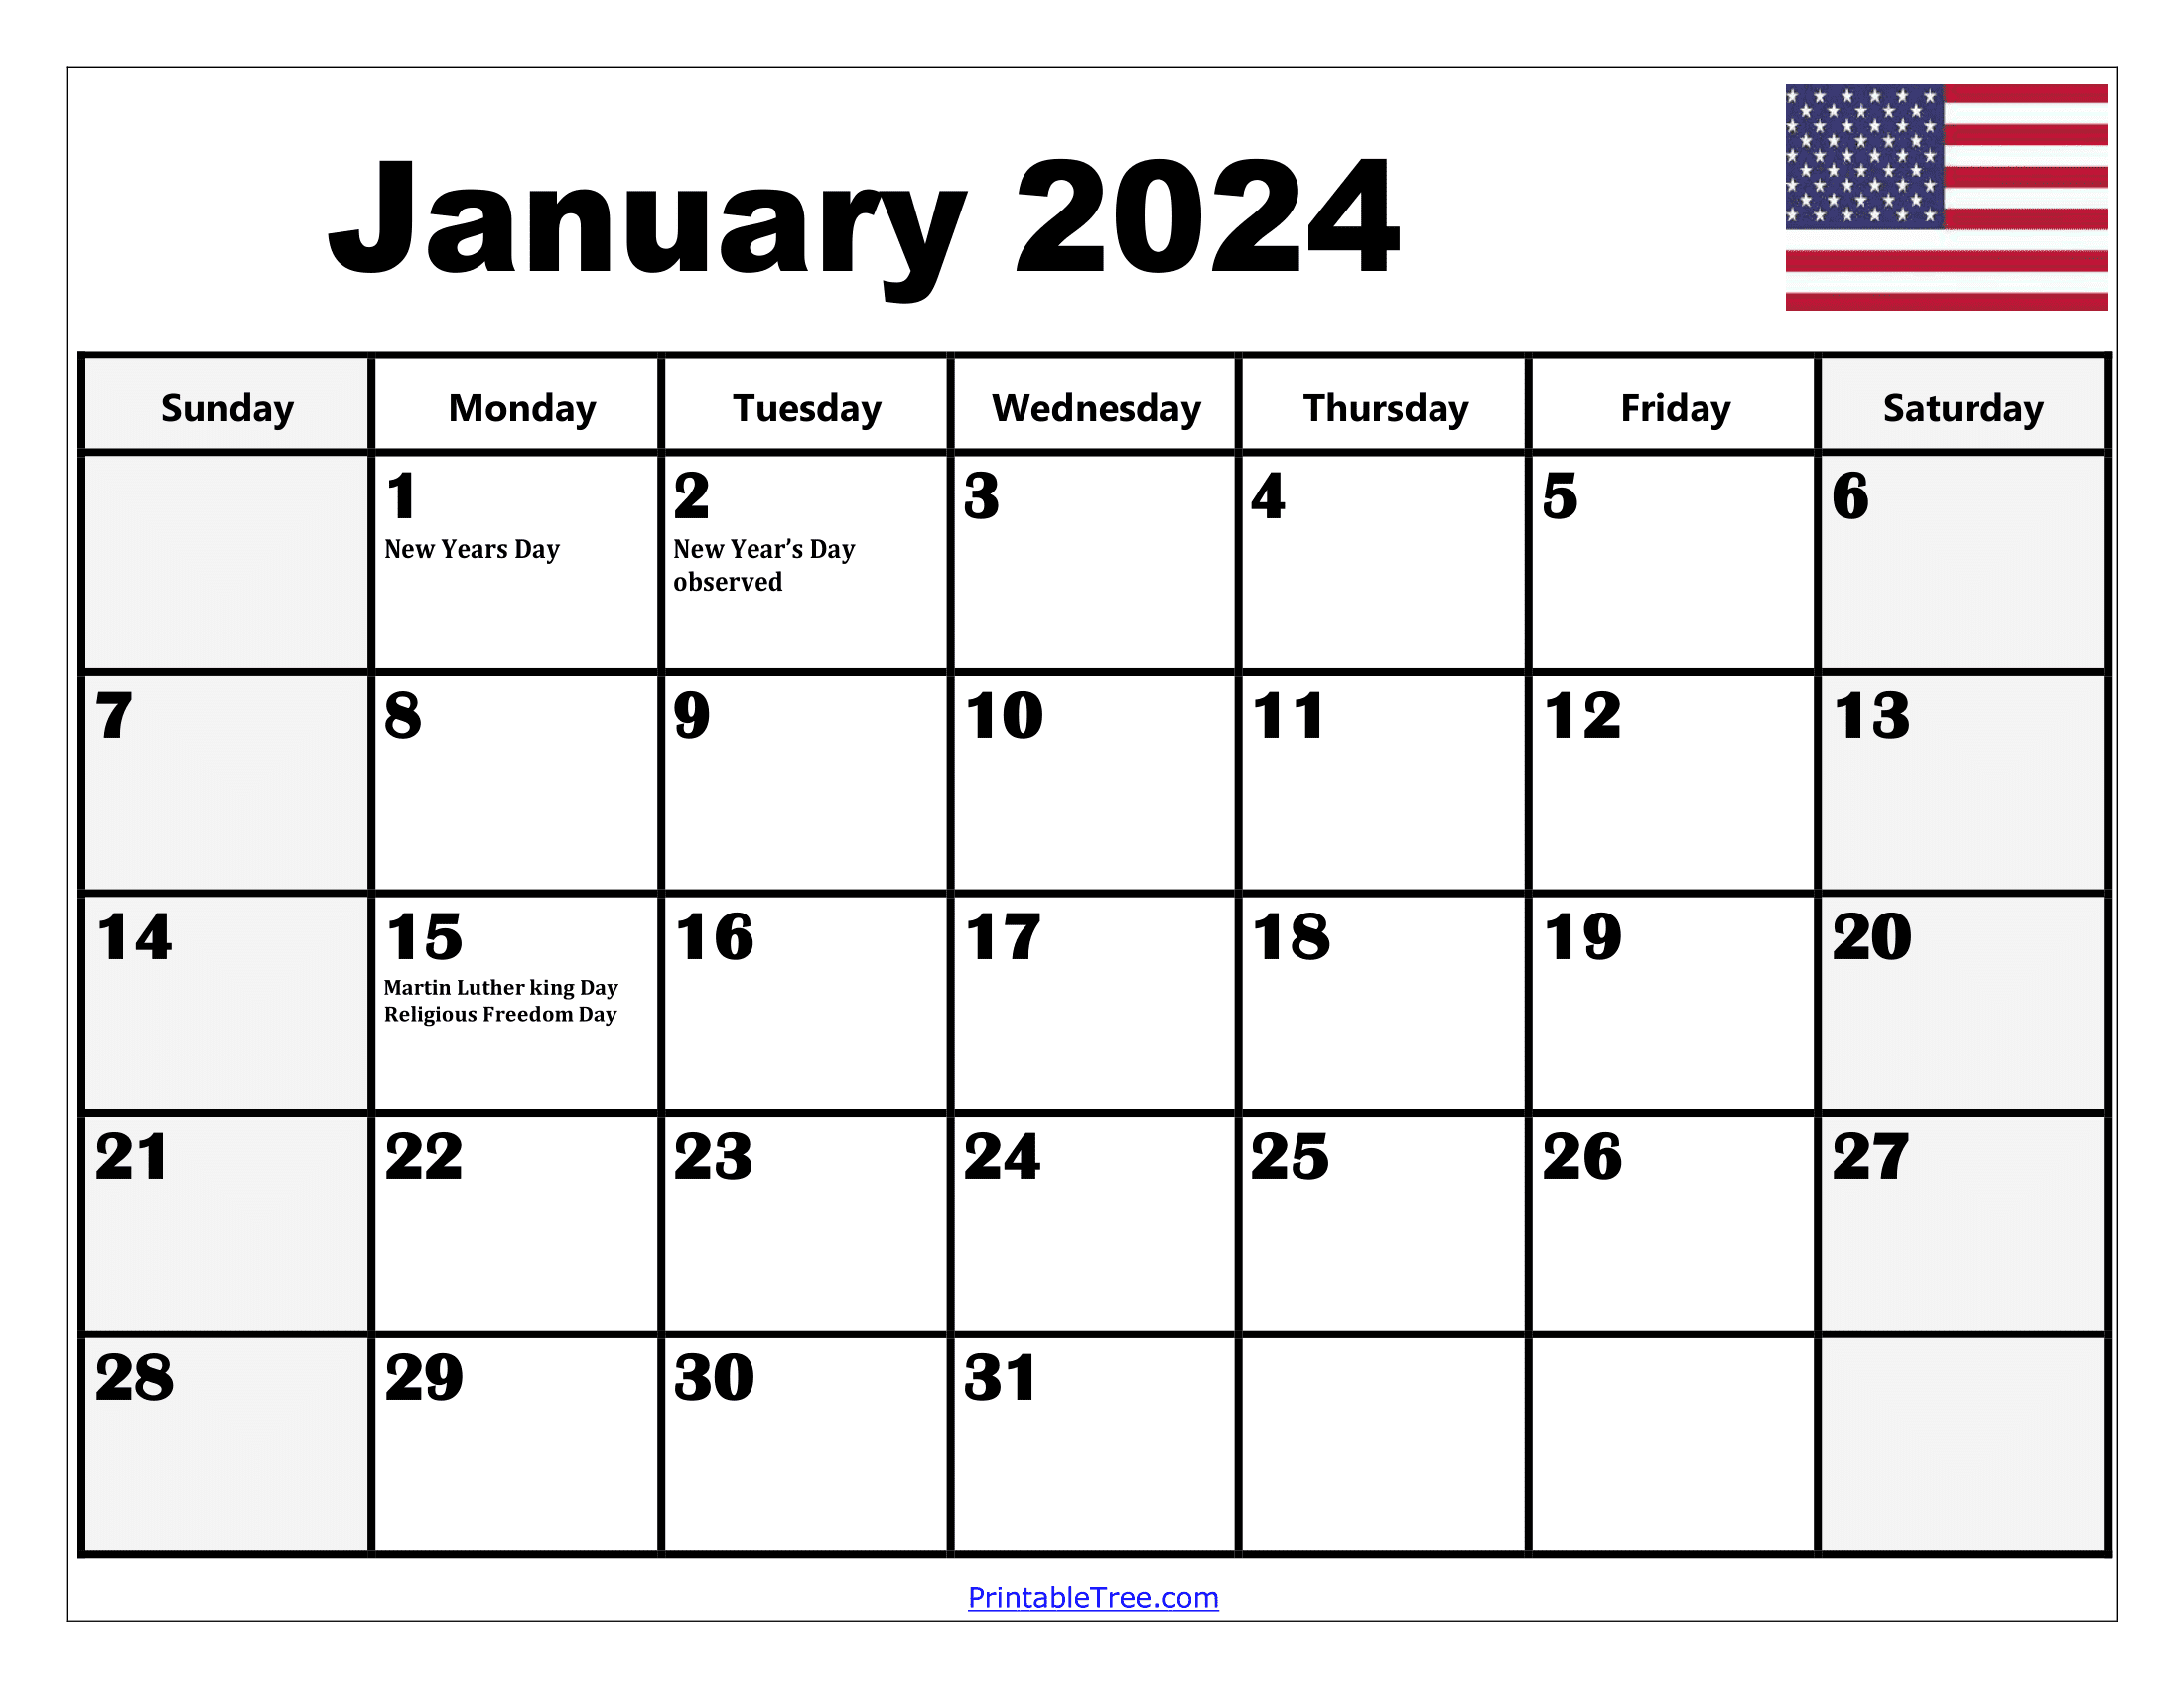 2024 Holiday Calendar Days Free Download Nov 2024 Calendar - Free Printable 2024 Calendar With Christian Holidays